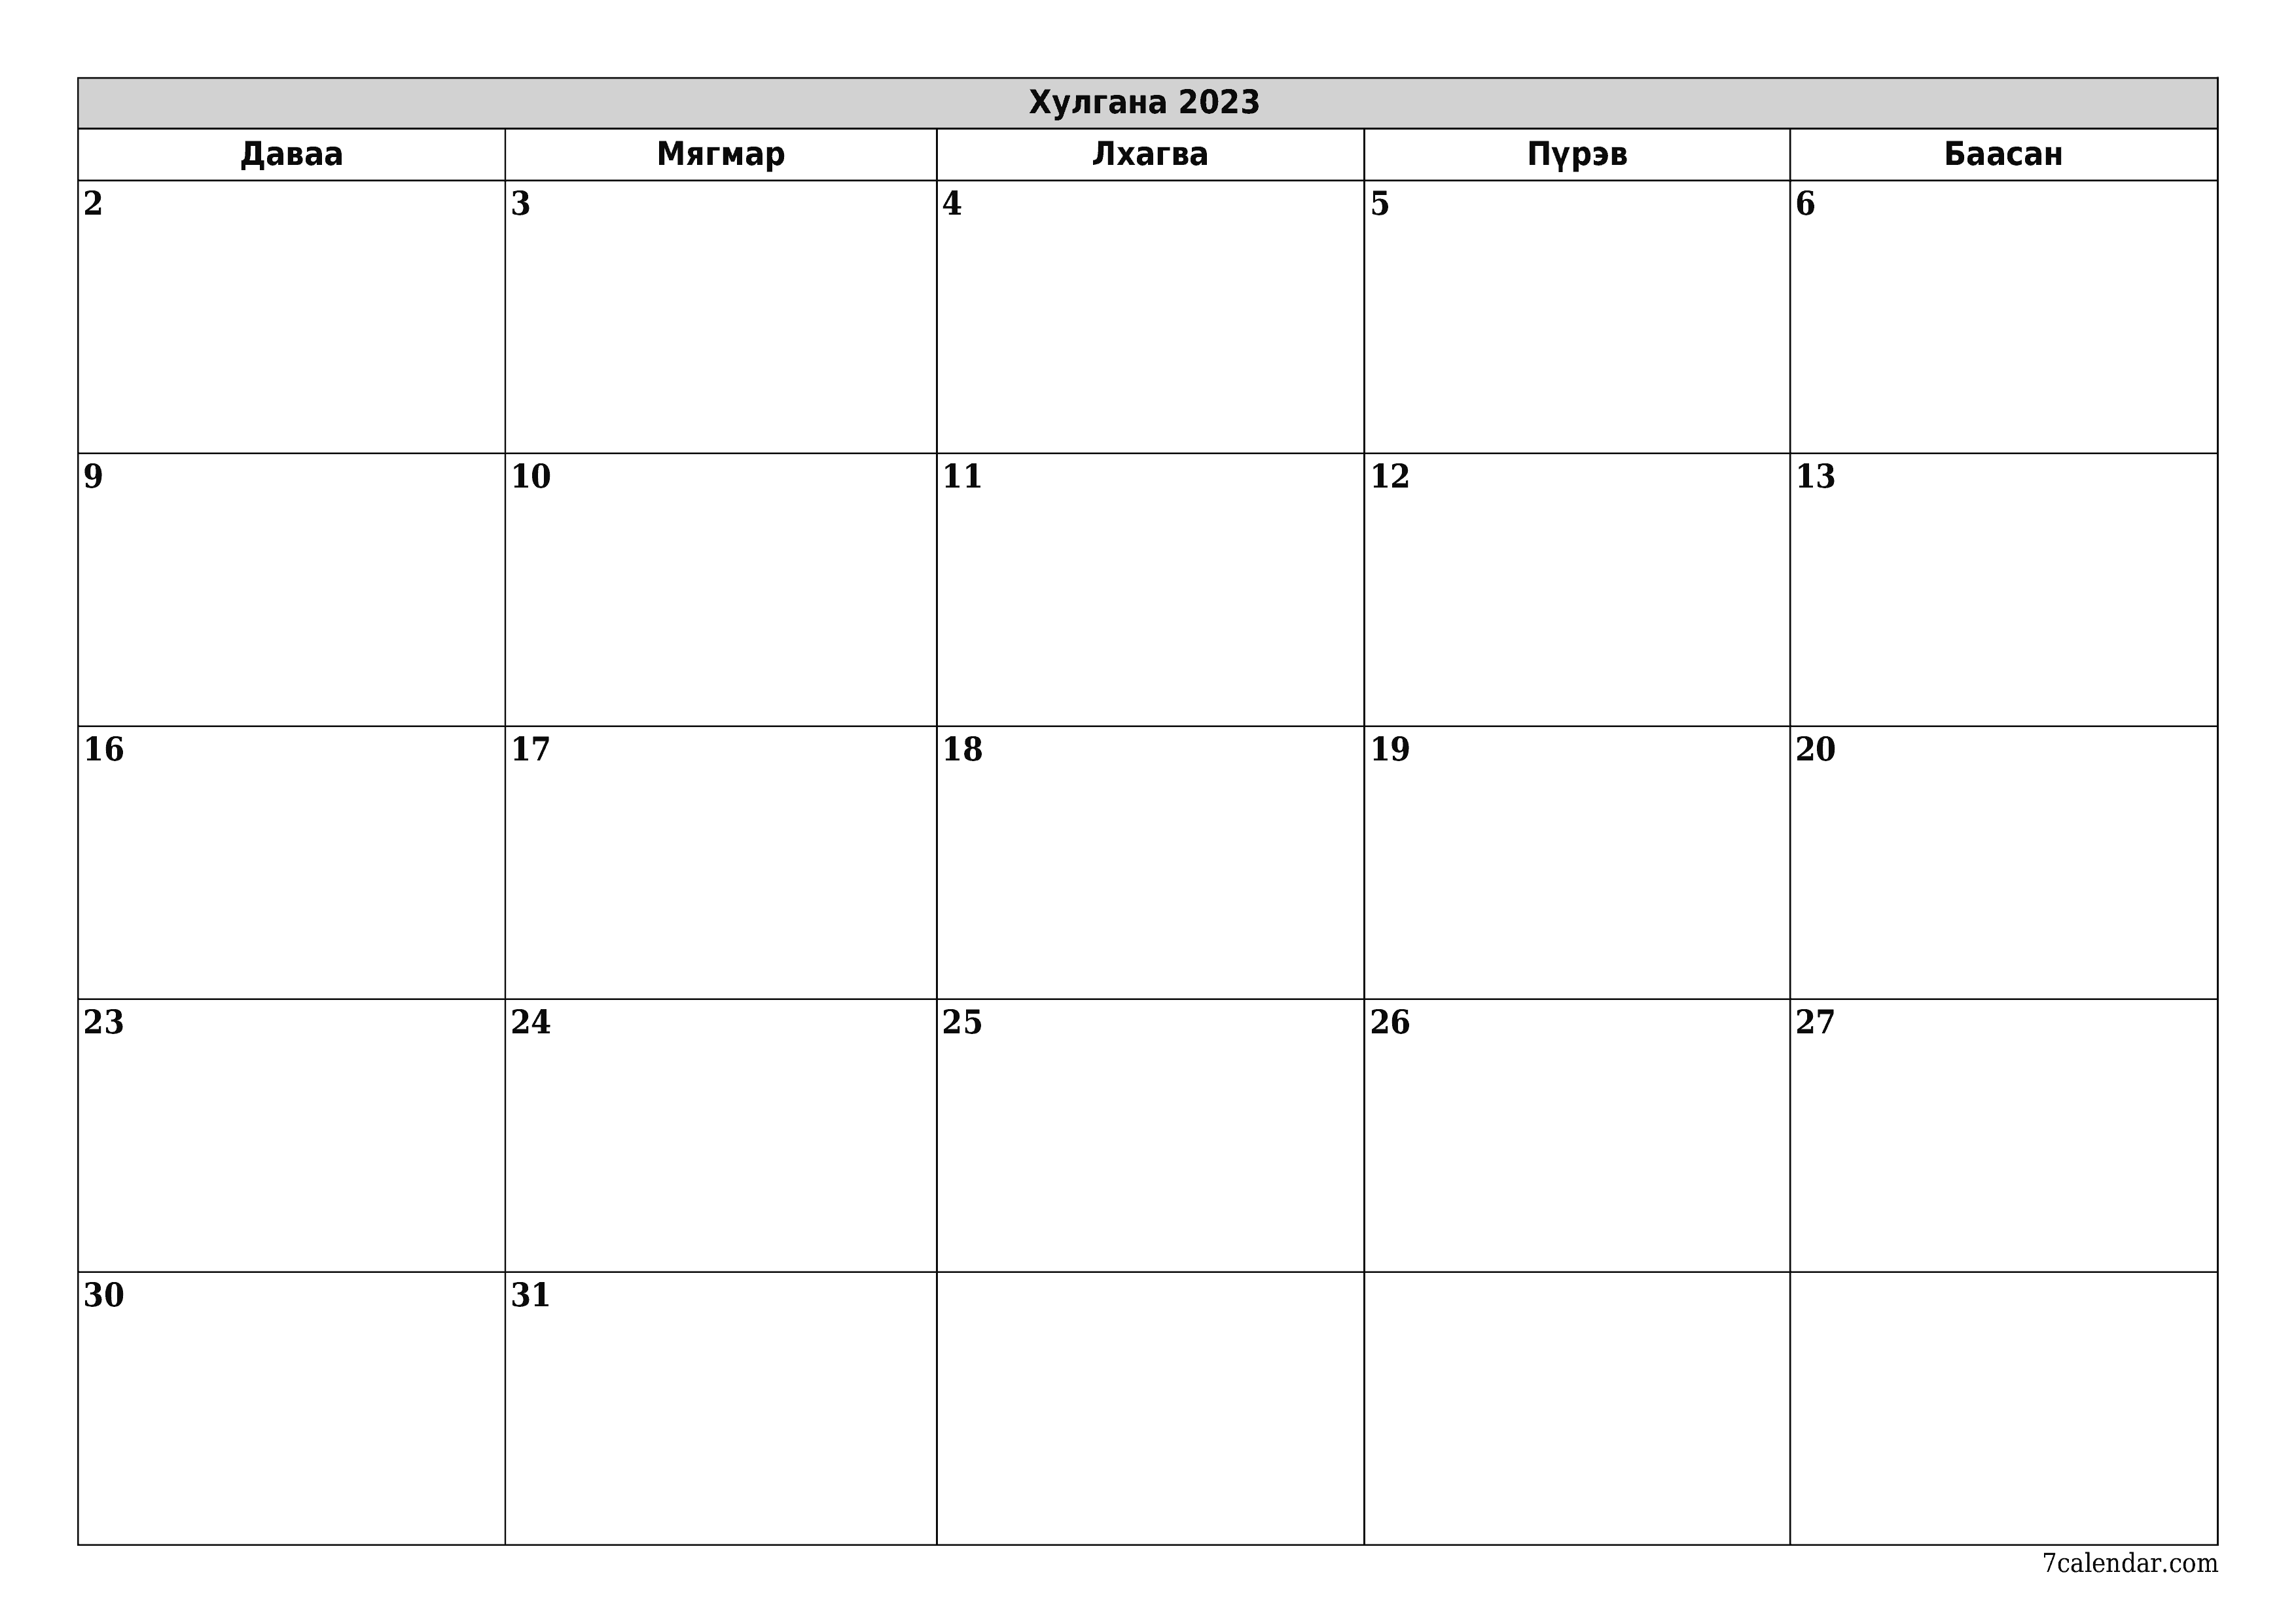 хэвлэх боломжтой ханын календарийн загвар үнэгүй хэвтээ Сар бүр төлөвлөгч хуанли Хулгана (Хул) 2023